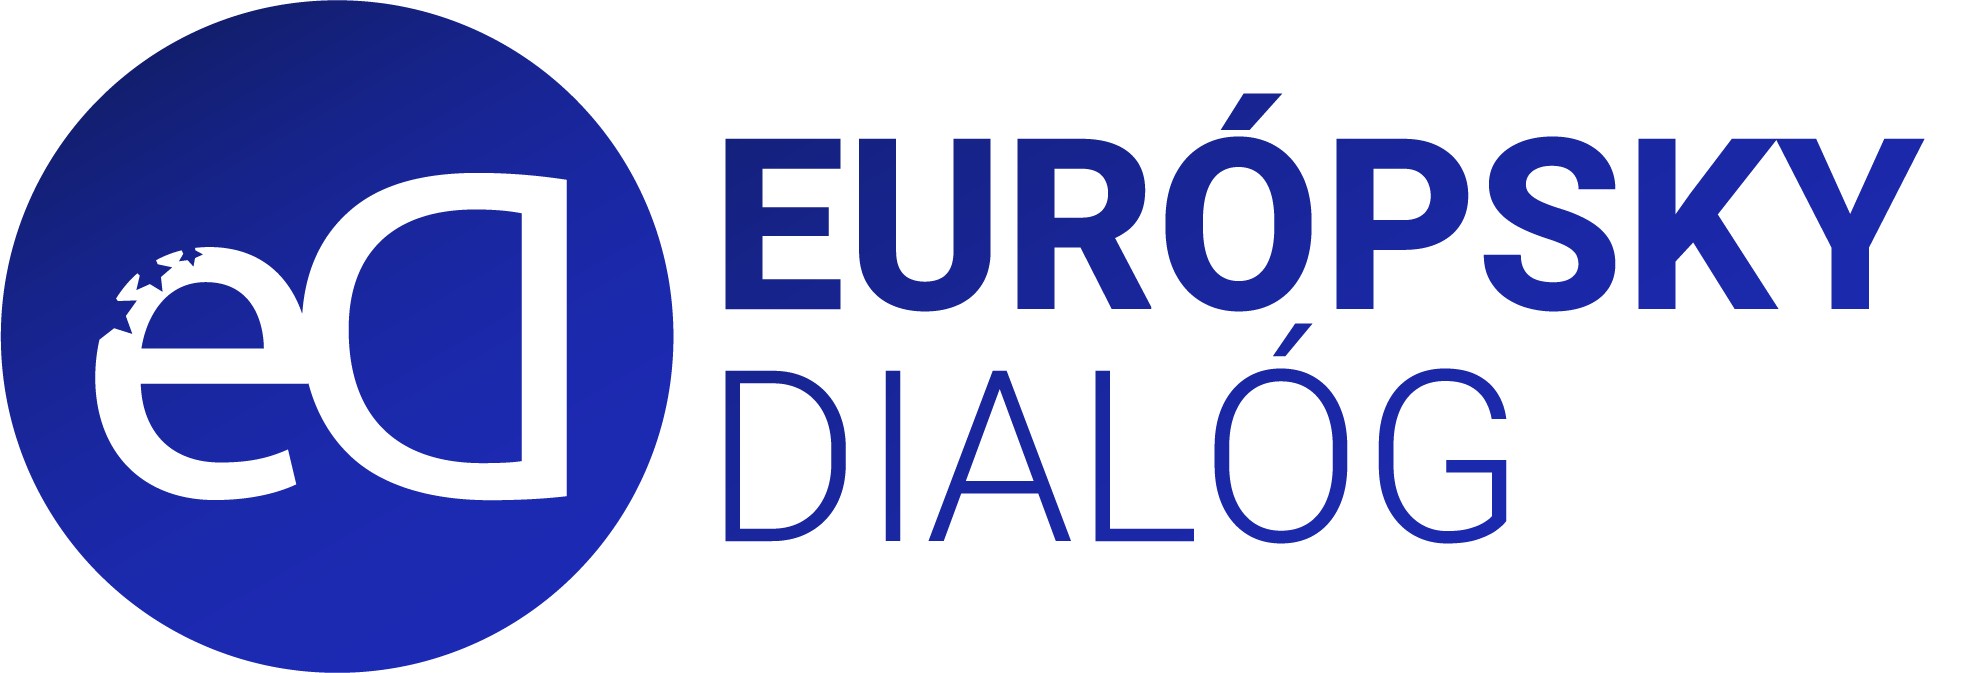 European Dialogue | LinkedIn